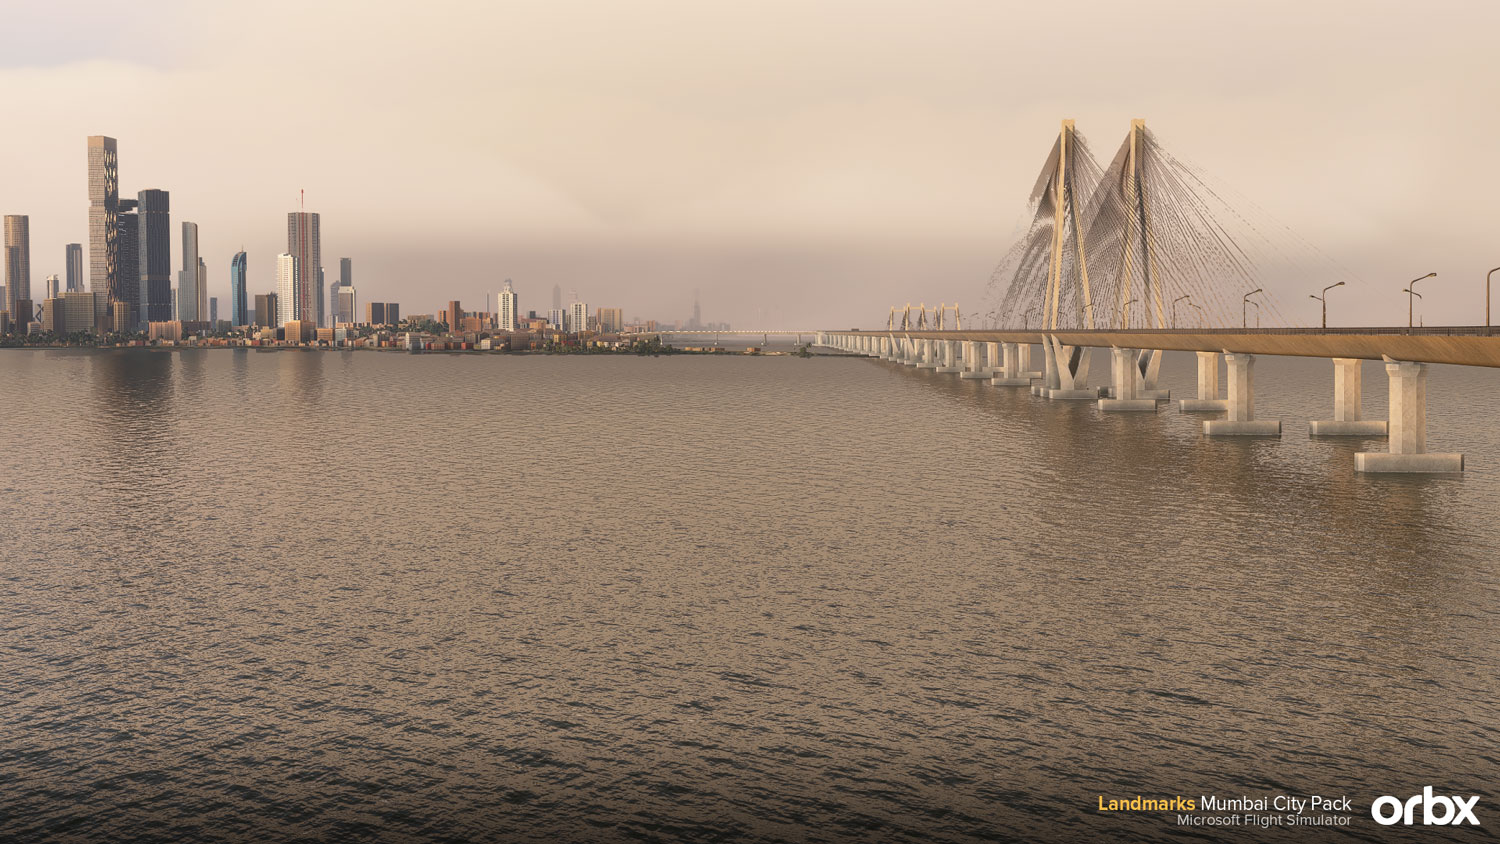 Orbx - Landmarks Mumbai City Pack MSFS